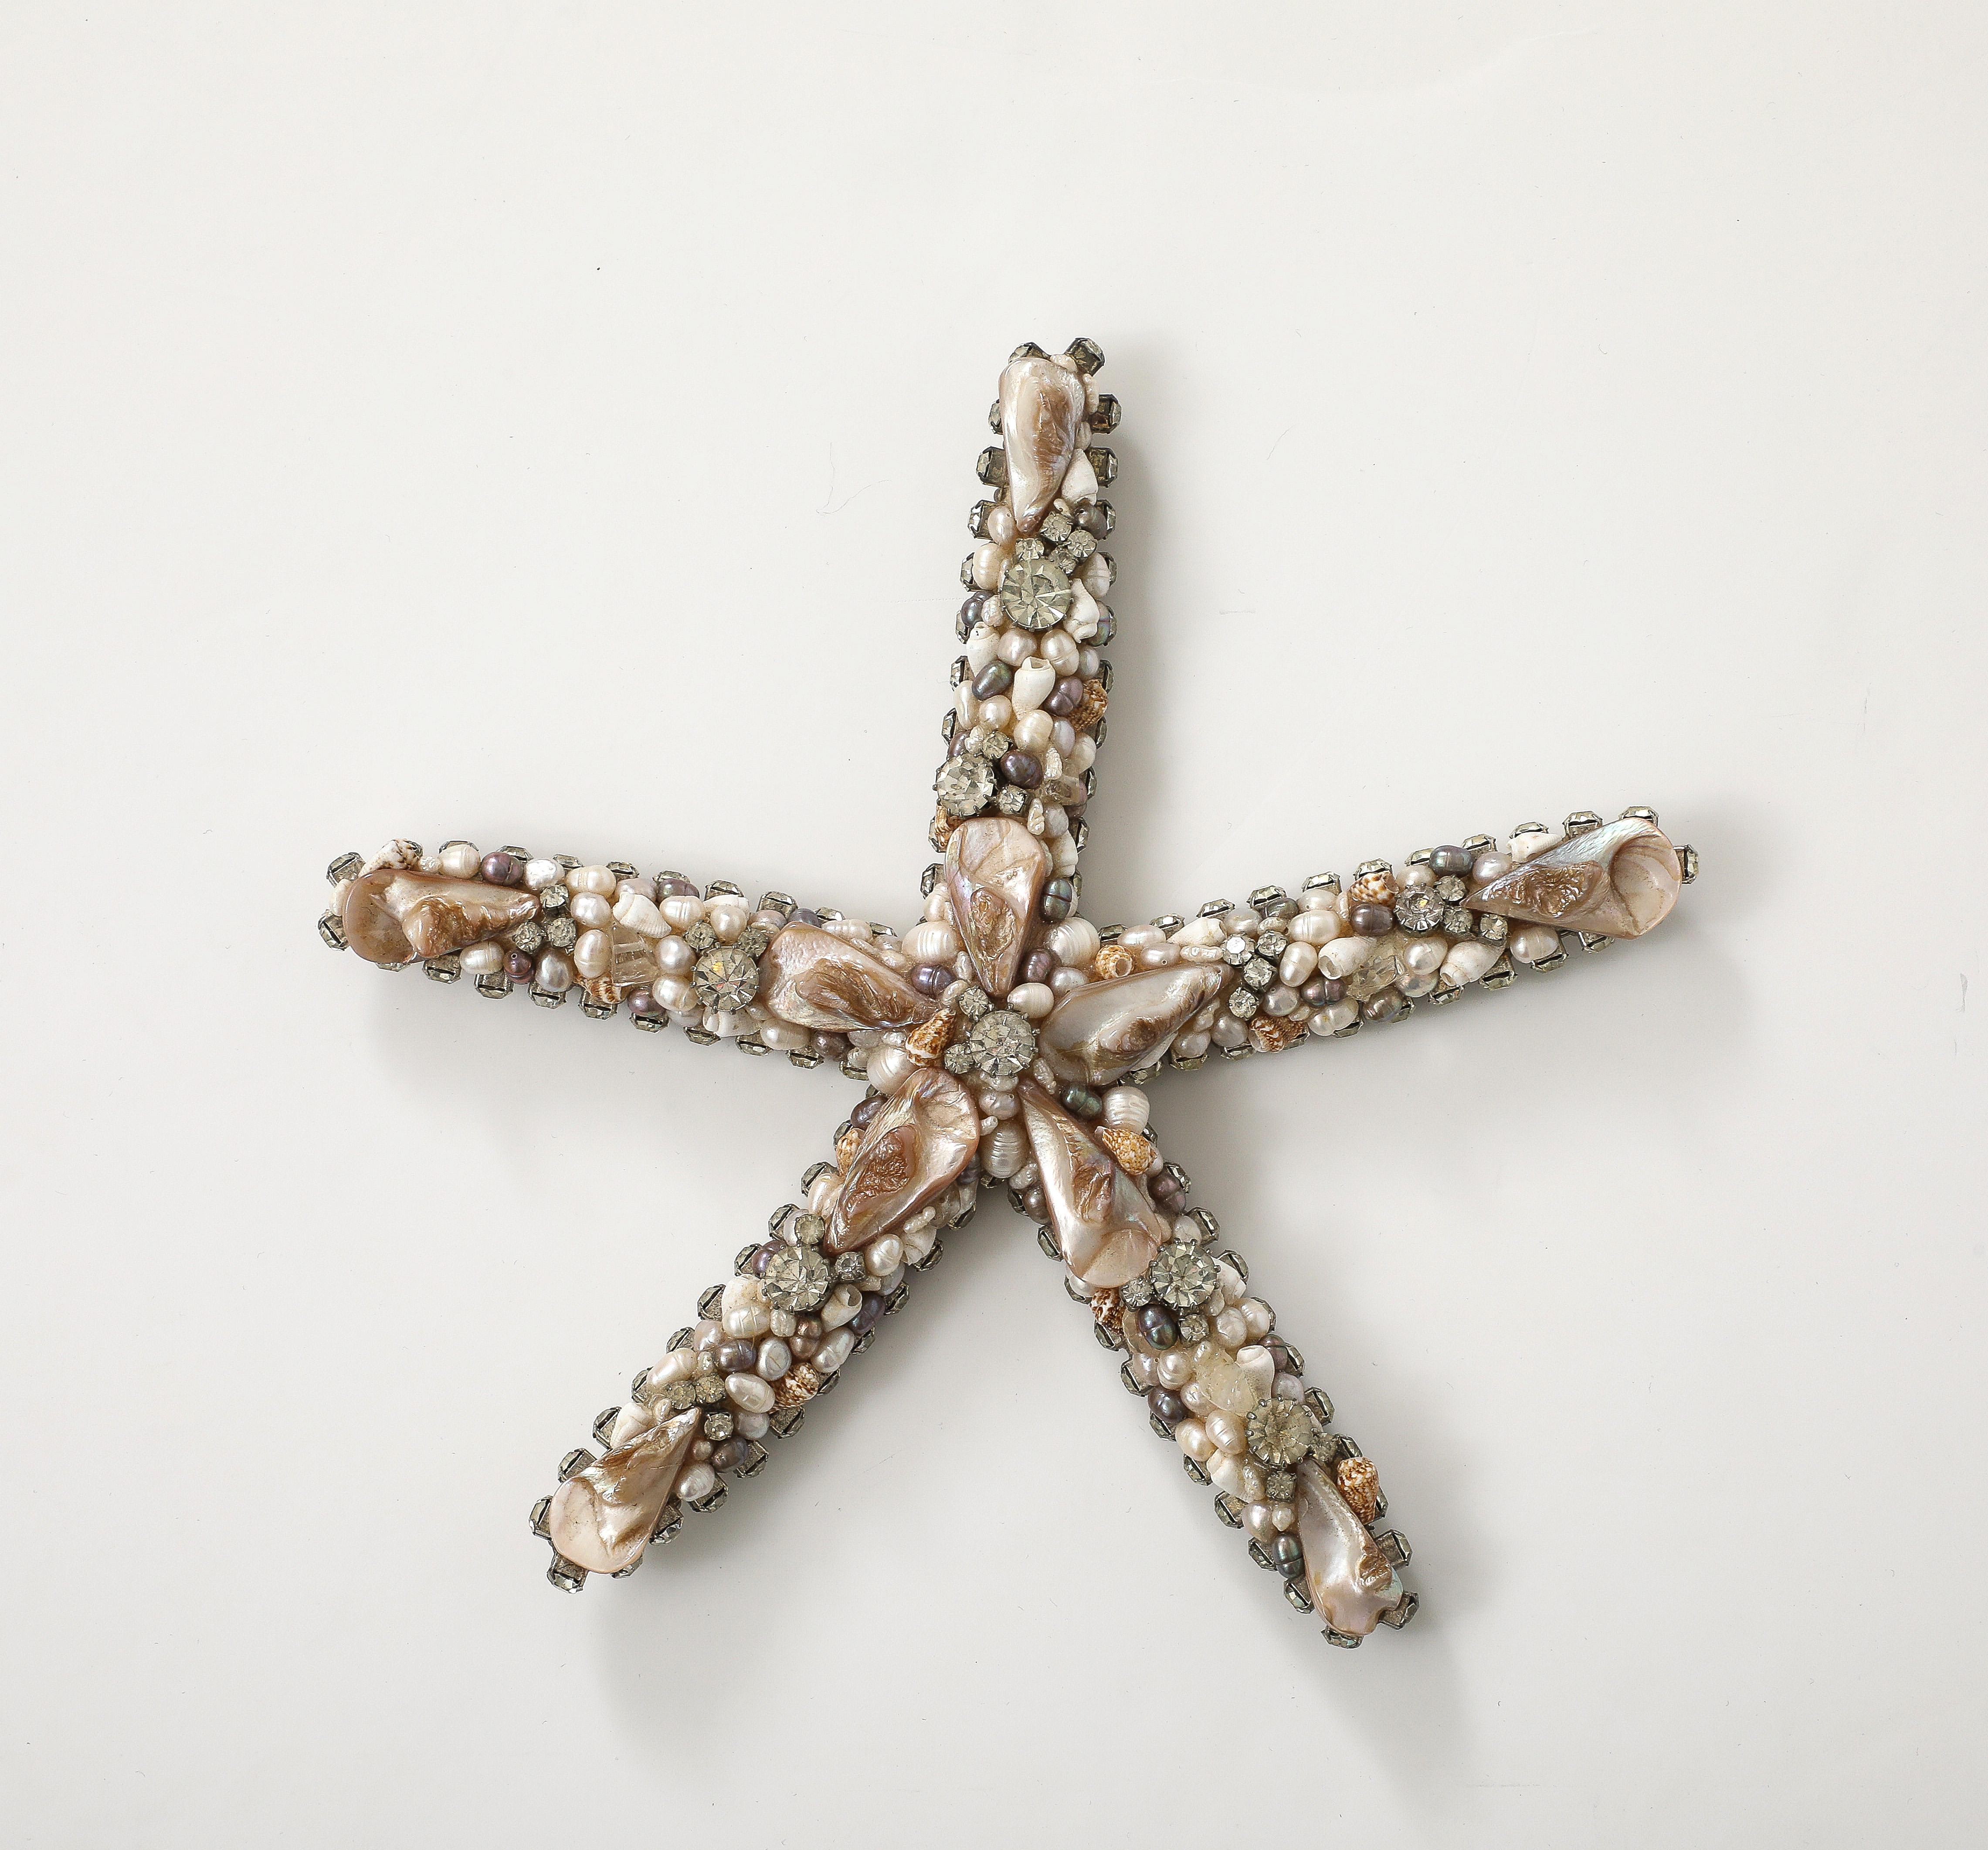 Großer Seestern mit Swarovski-Kristallen verziert und 
Miniaturmuscheln nach Künstler  Douglas Cloutier
Das Stück ist auf der Rückseite mit dem Label von Cloutier signiert.